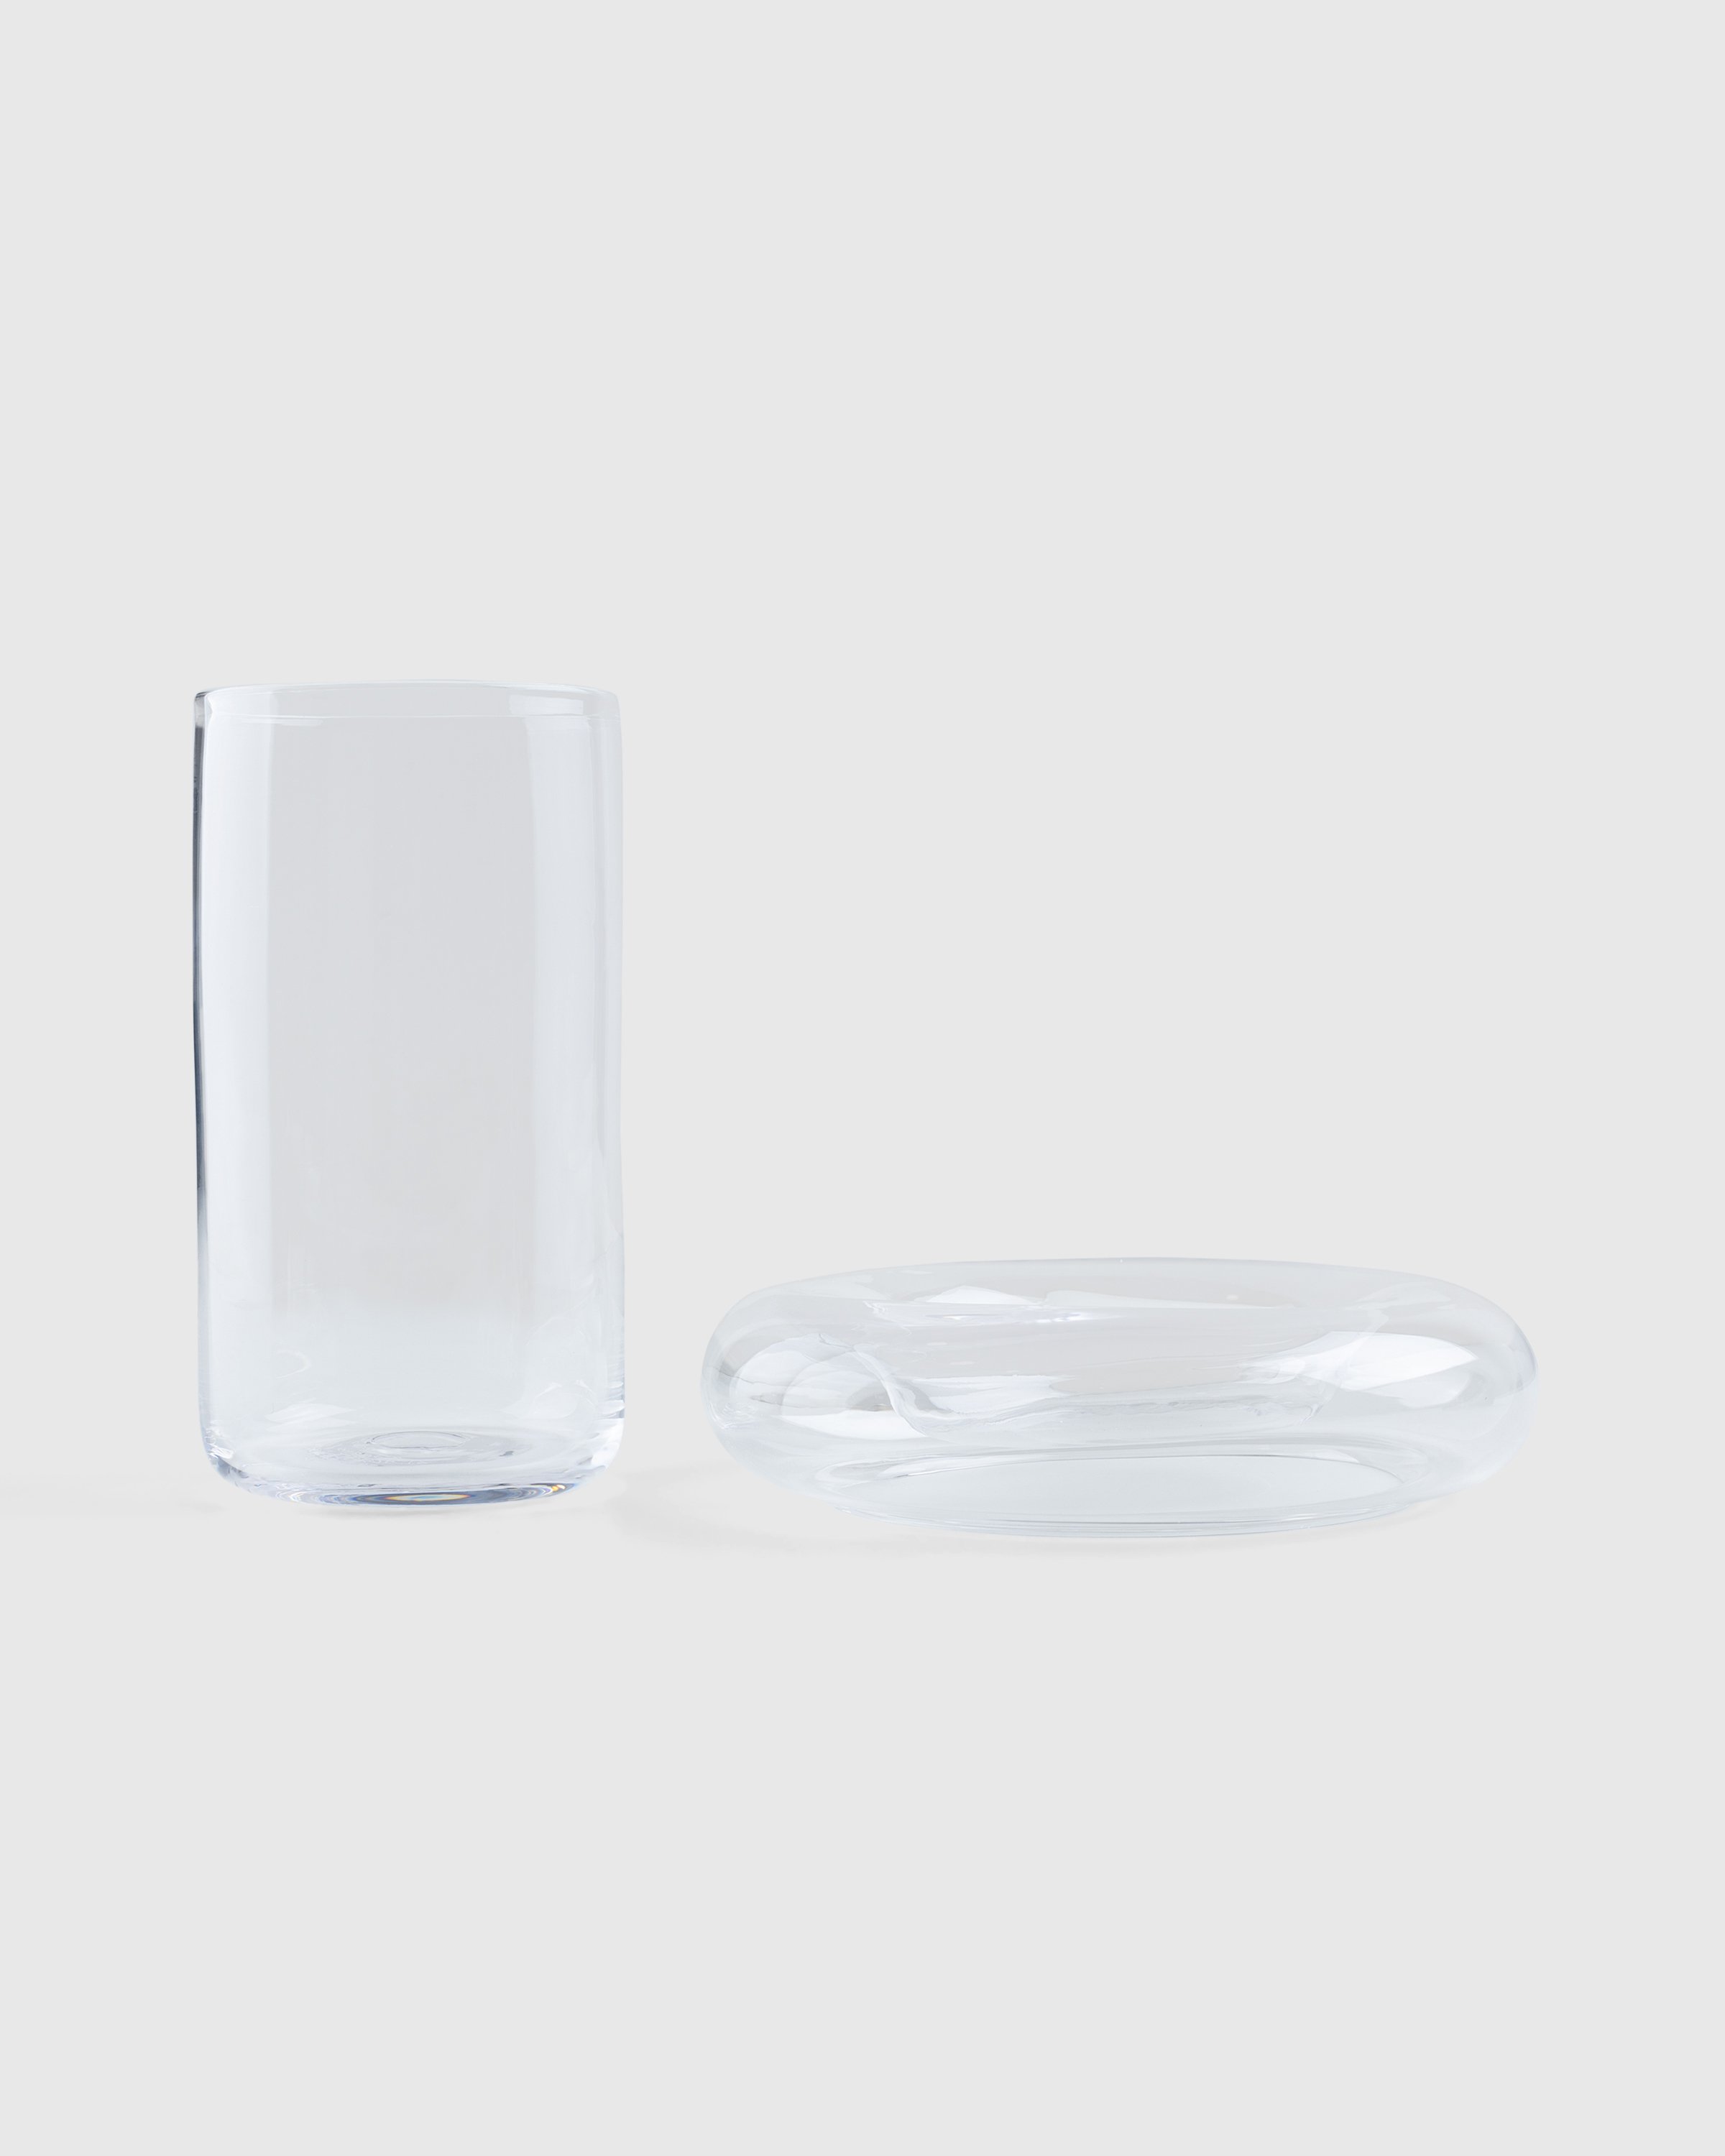 Gustaf Westman - Chunky Vase 0023 Transparent - Lifestyle - White - Image 2